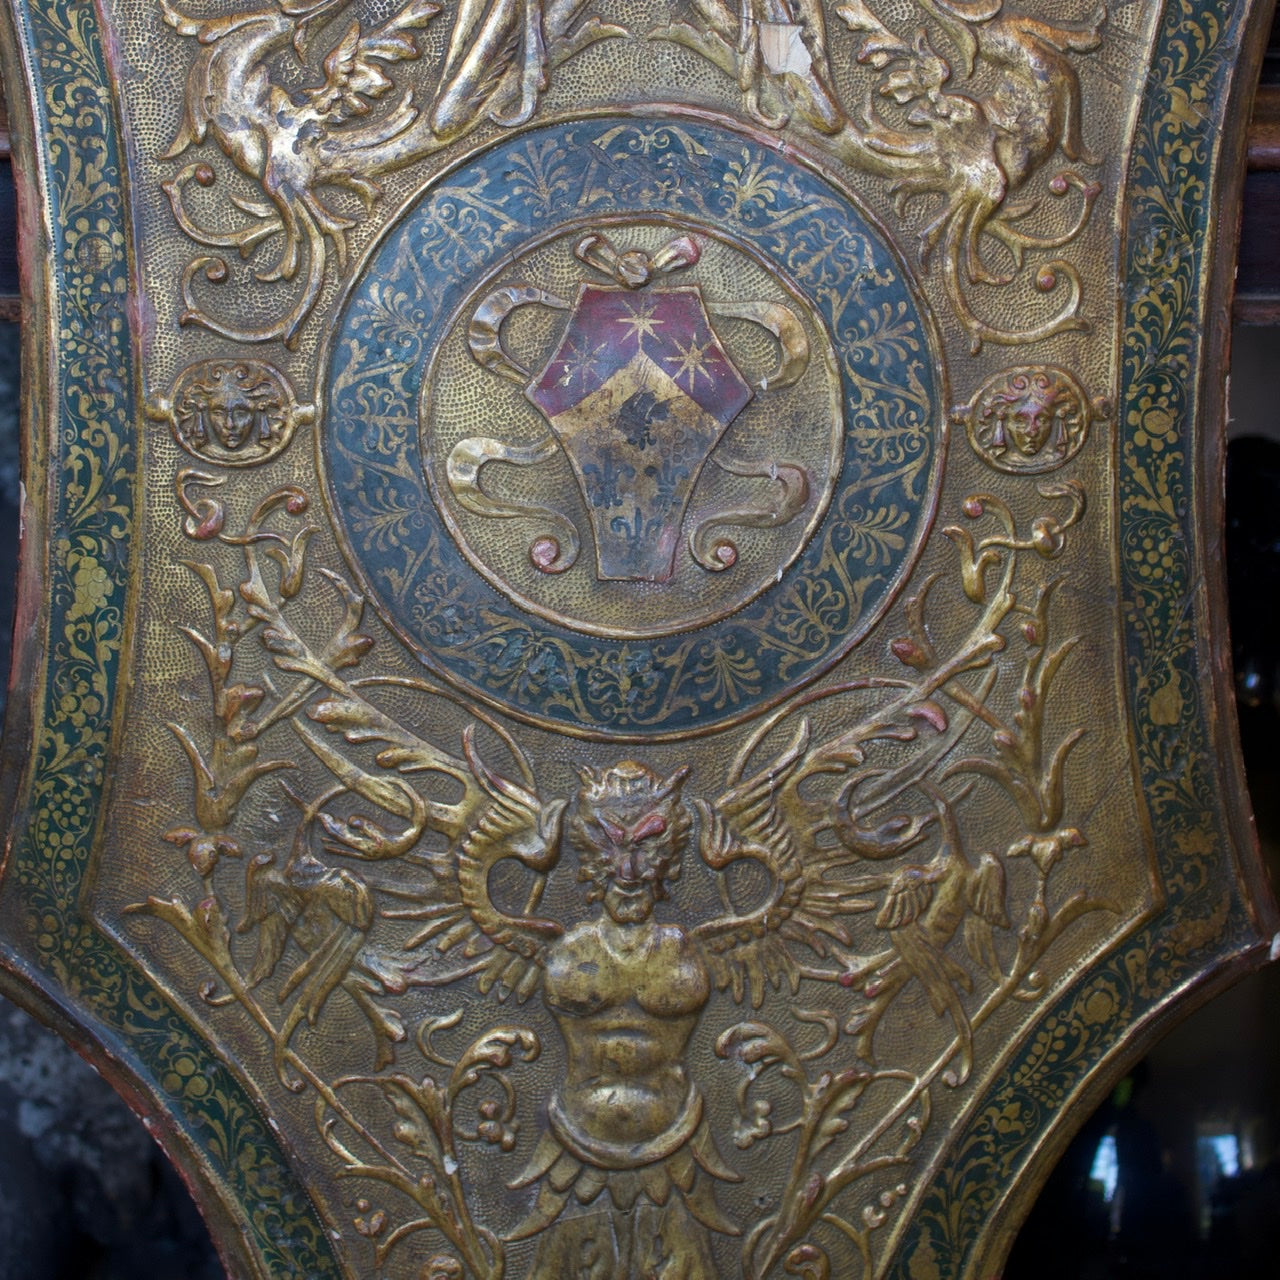 Early 19th c. Italian Renaissance Revival Pastiglia Heraldic Shield